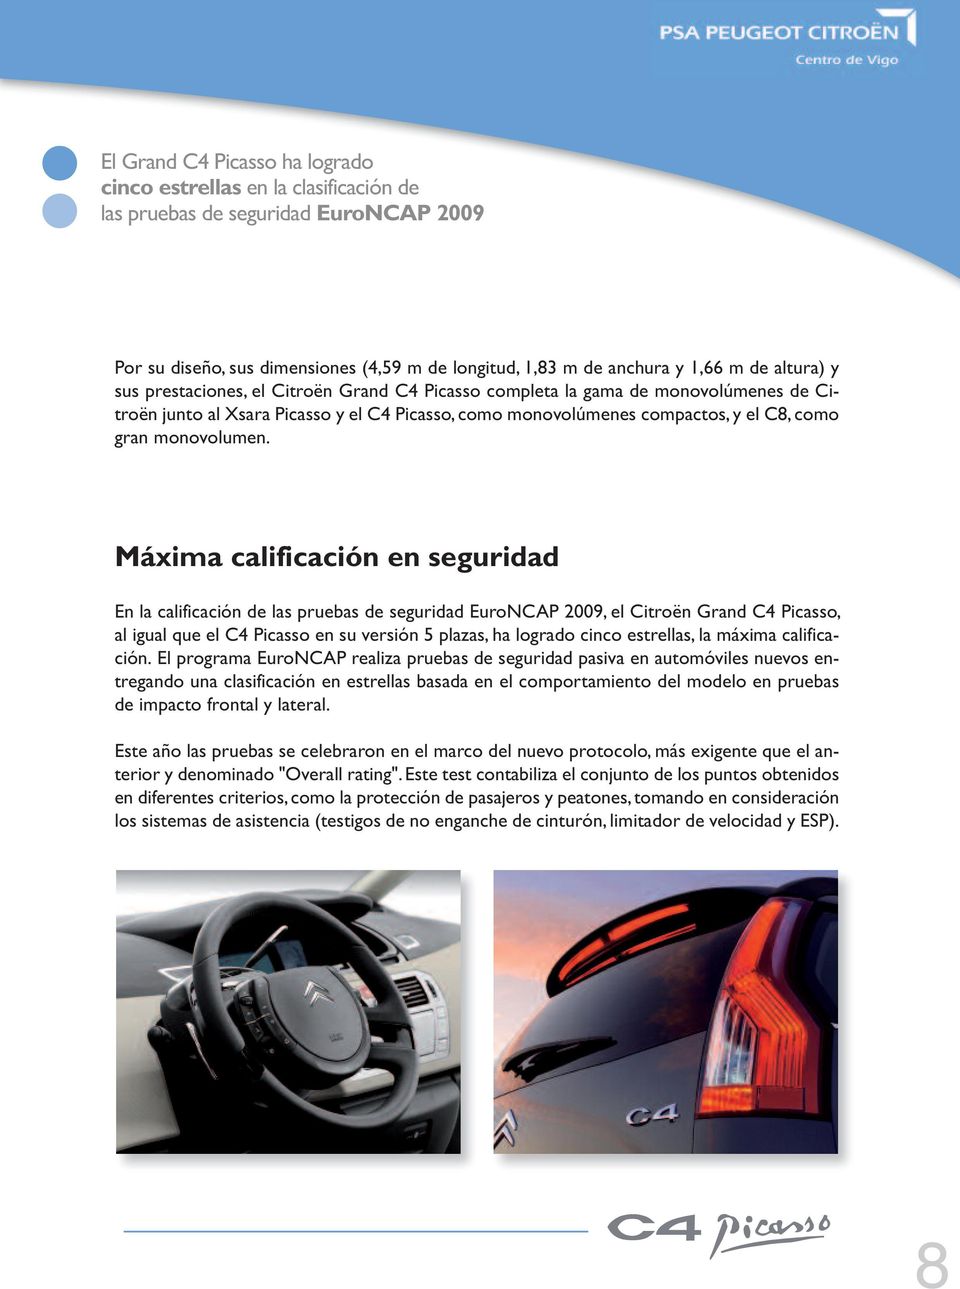 Máxima calificación en seguridad En la calificación de las pruebas de seguridad EuroNCAP 2009, el Citroën Grand C4 Picasso, al igual que el C4 Picasso en su versión 5 plazas, ha logrado cinco